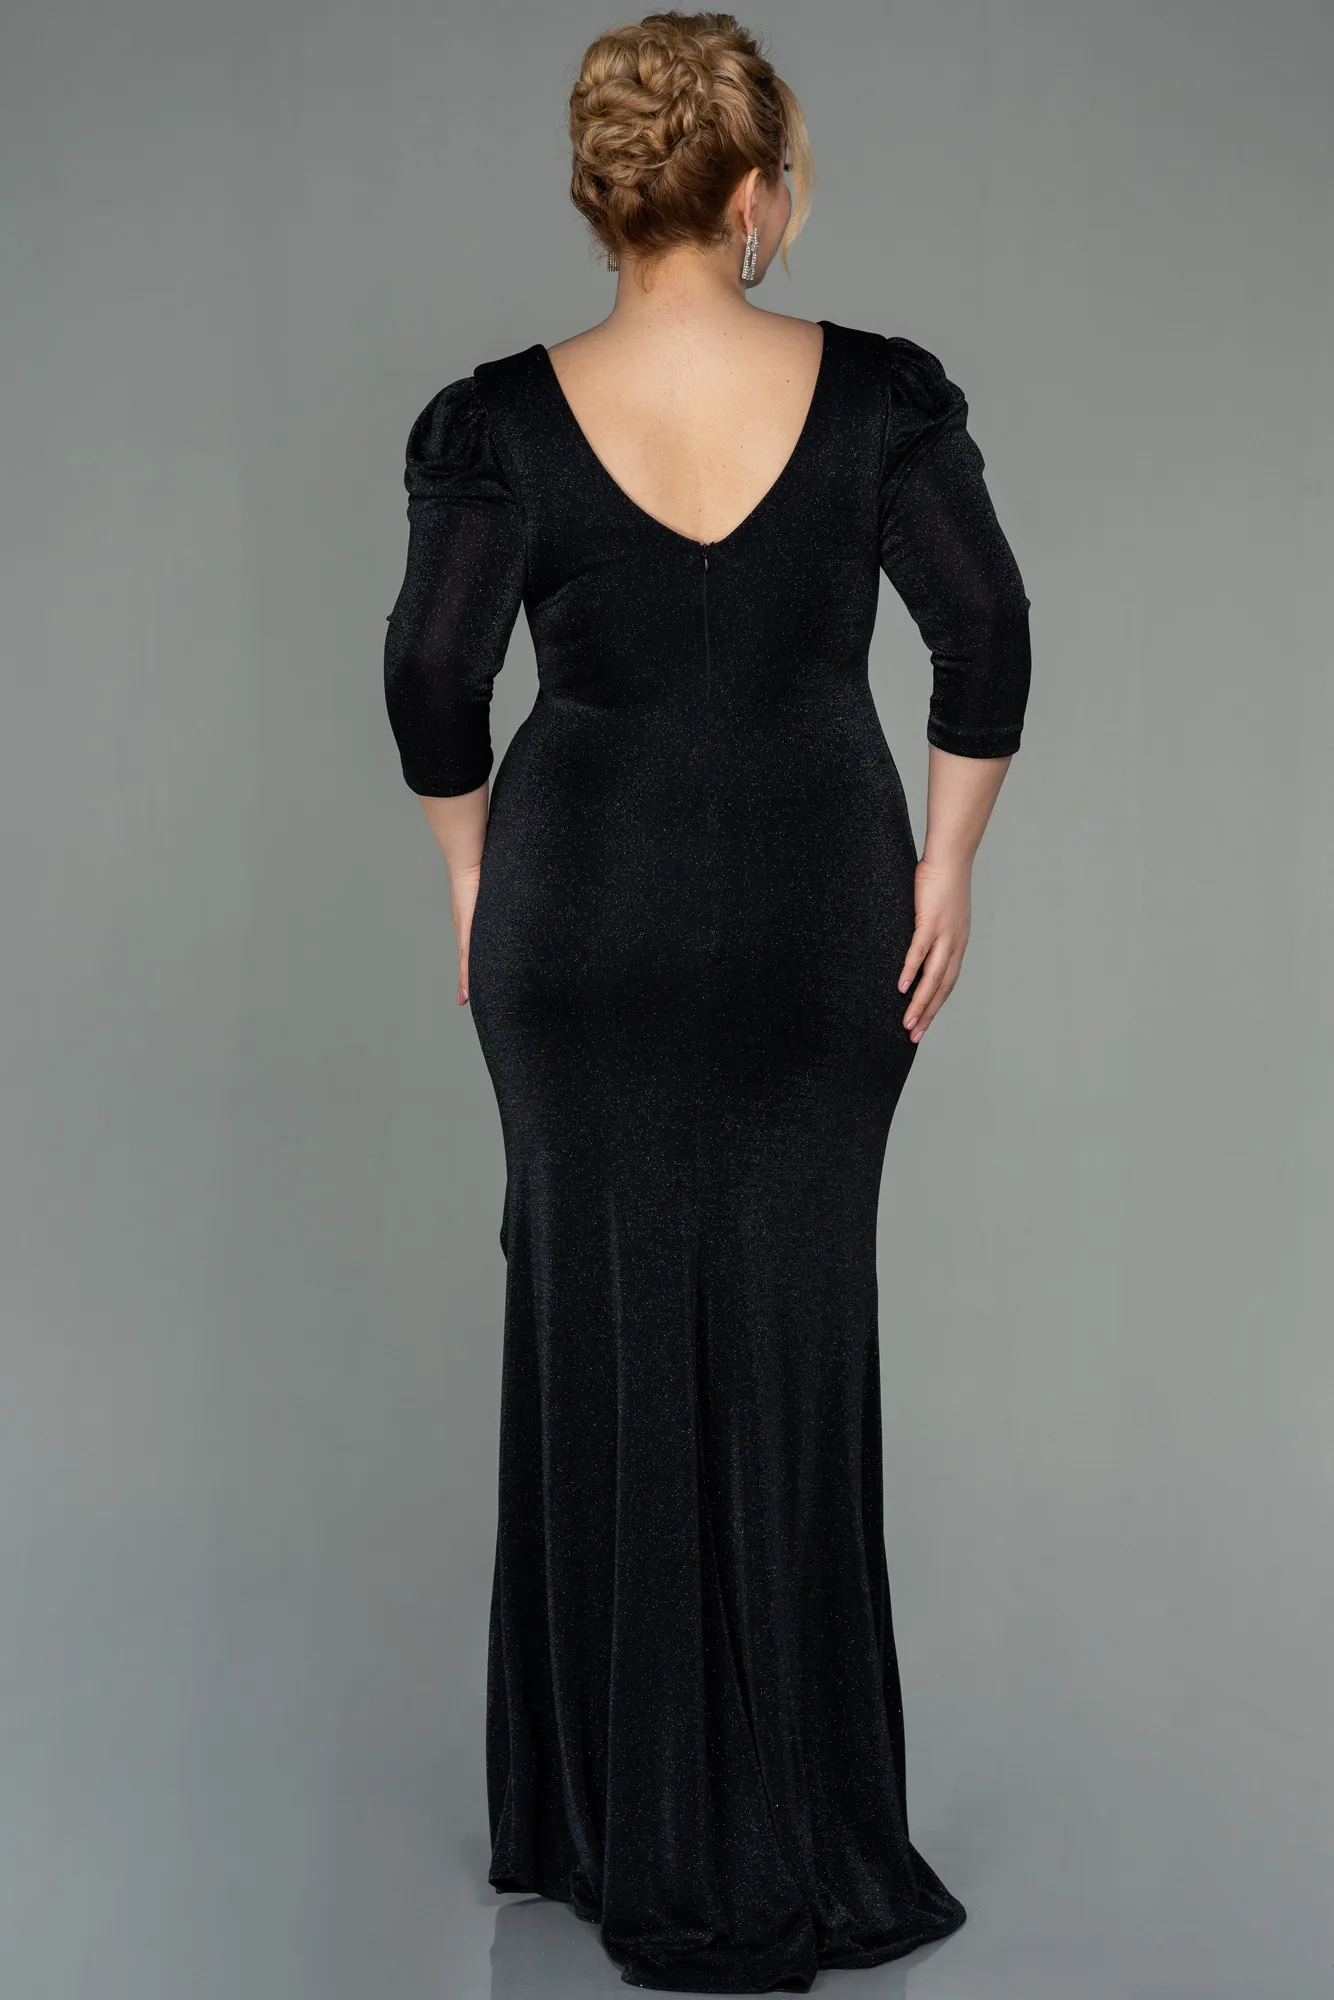 Black-Long Evening Dress ABU2802